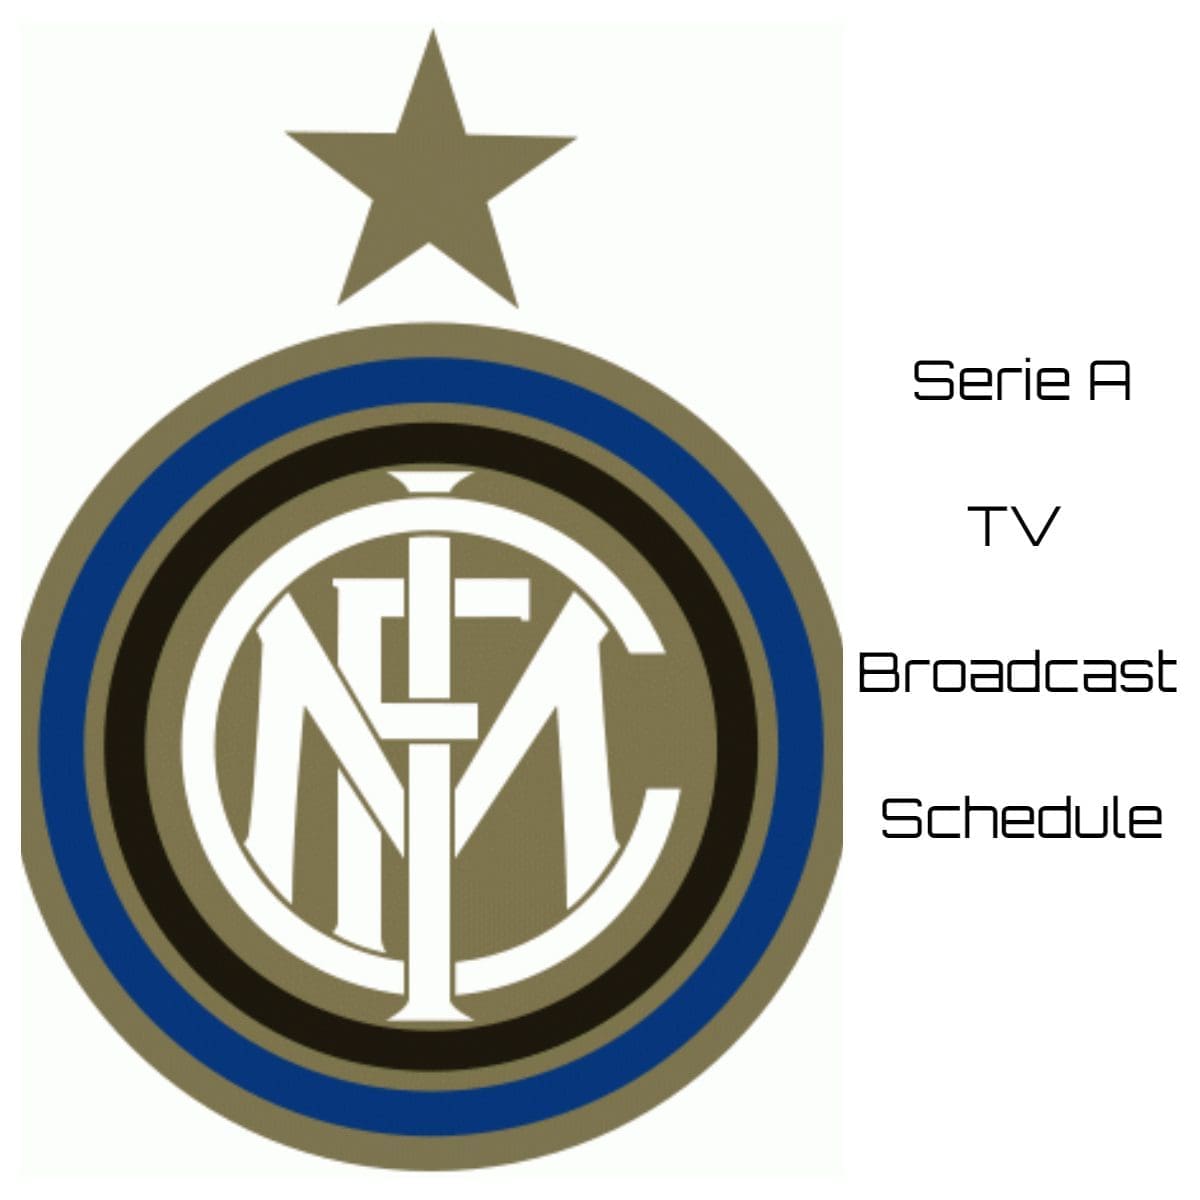 Inter Milan TV Broadcast Schedule